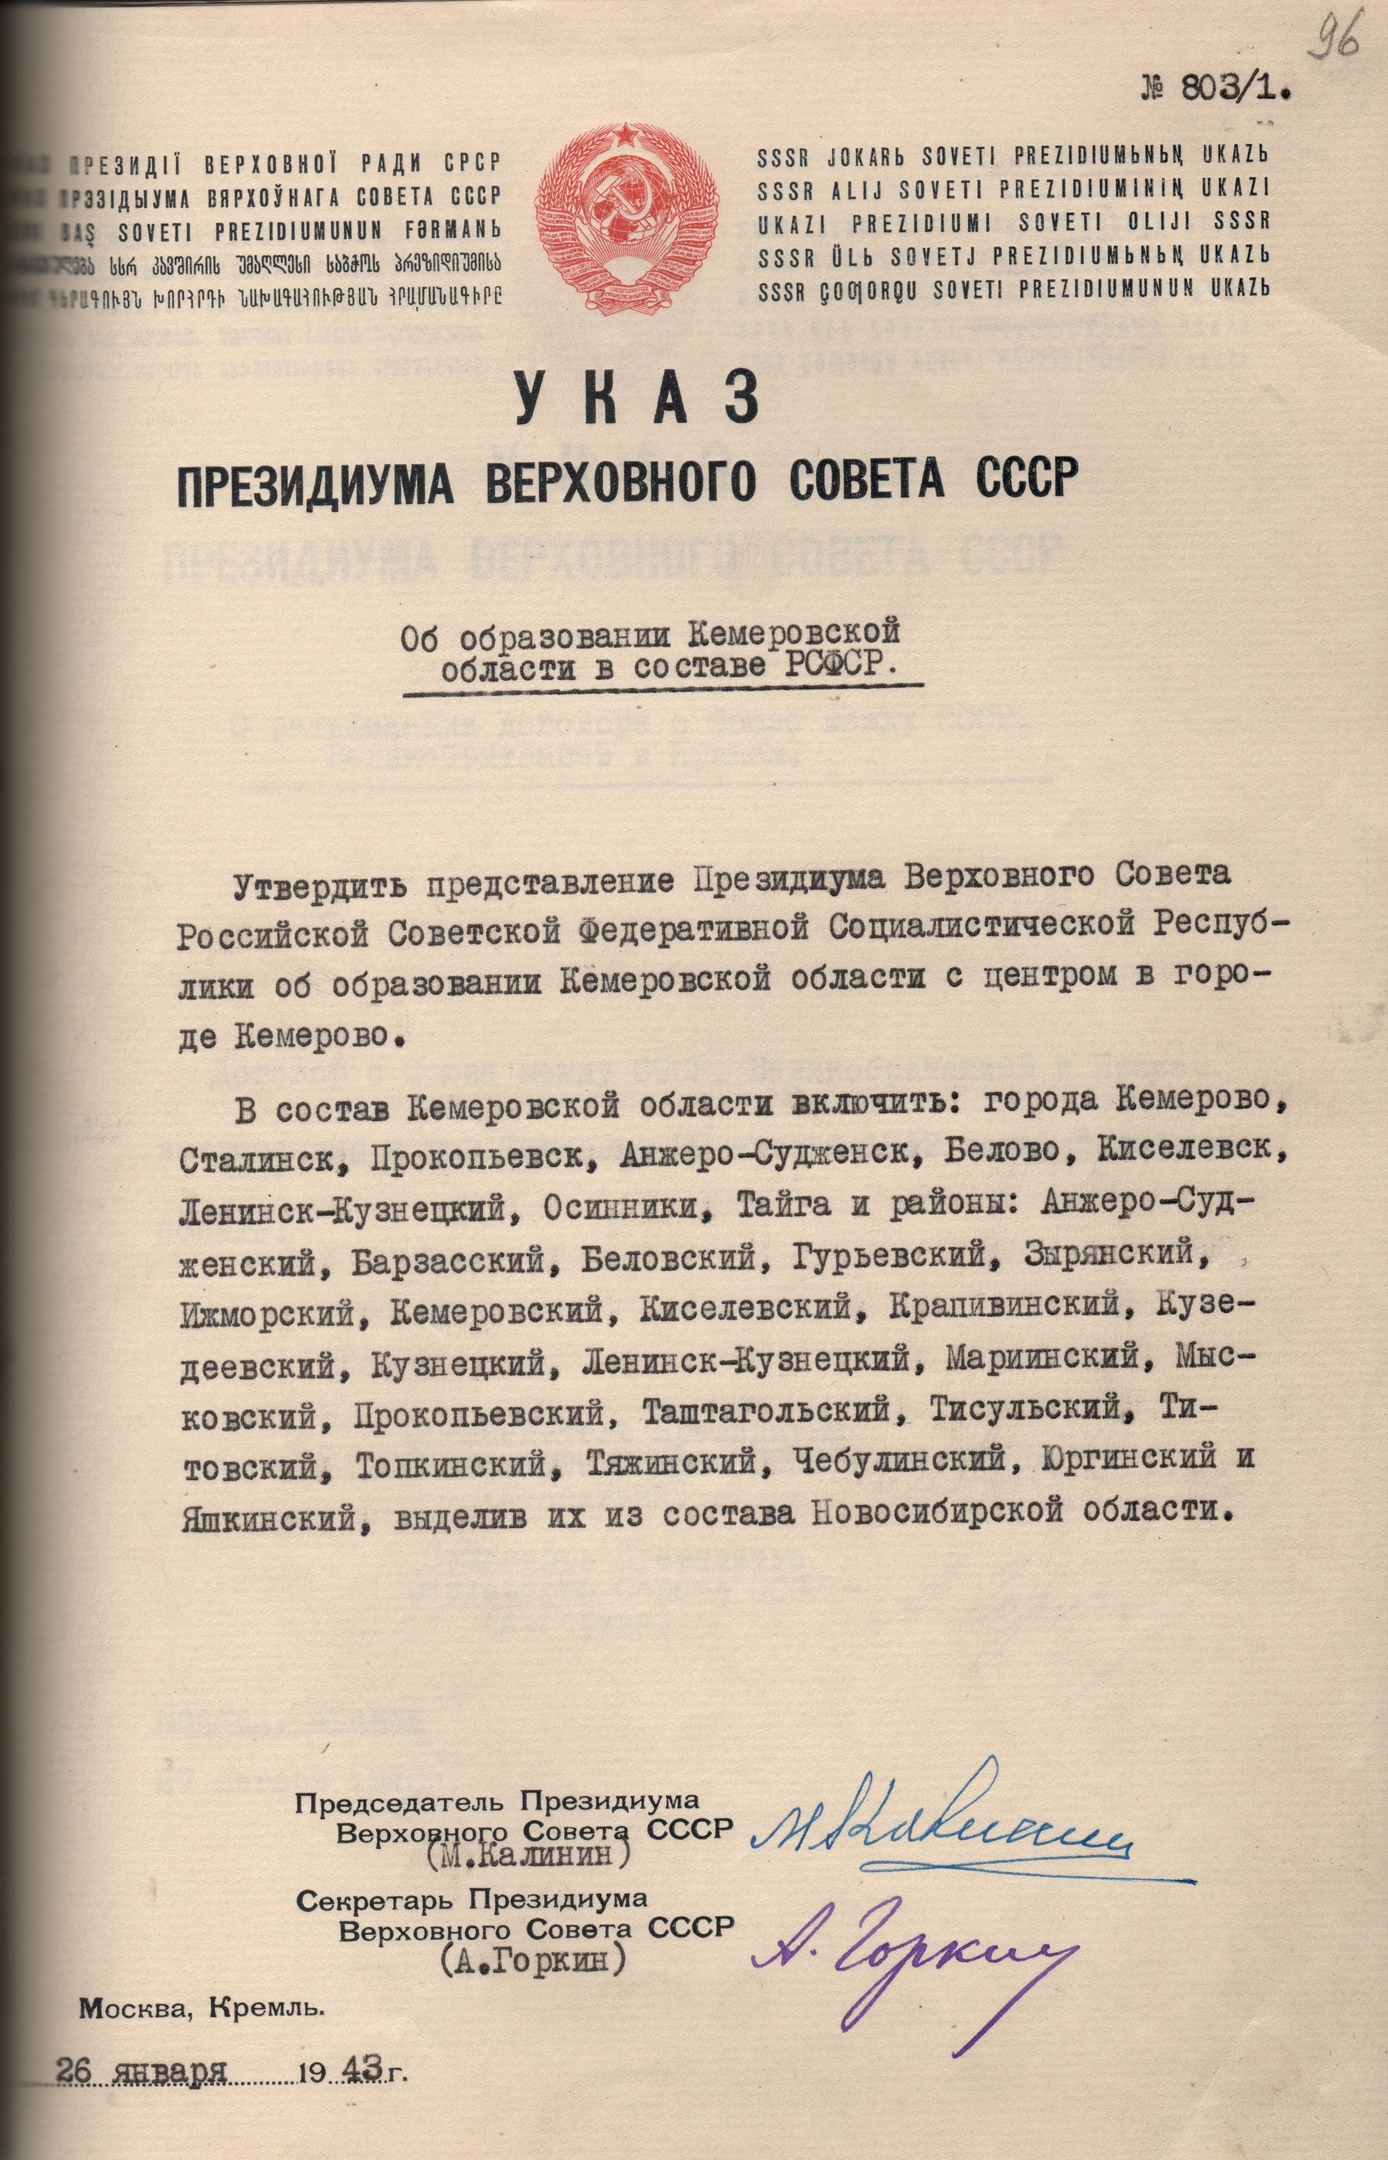 80 лет назад, 26 января 1943 года, Указом Президиума Верховного Совета СССР была образована Кемеровская область